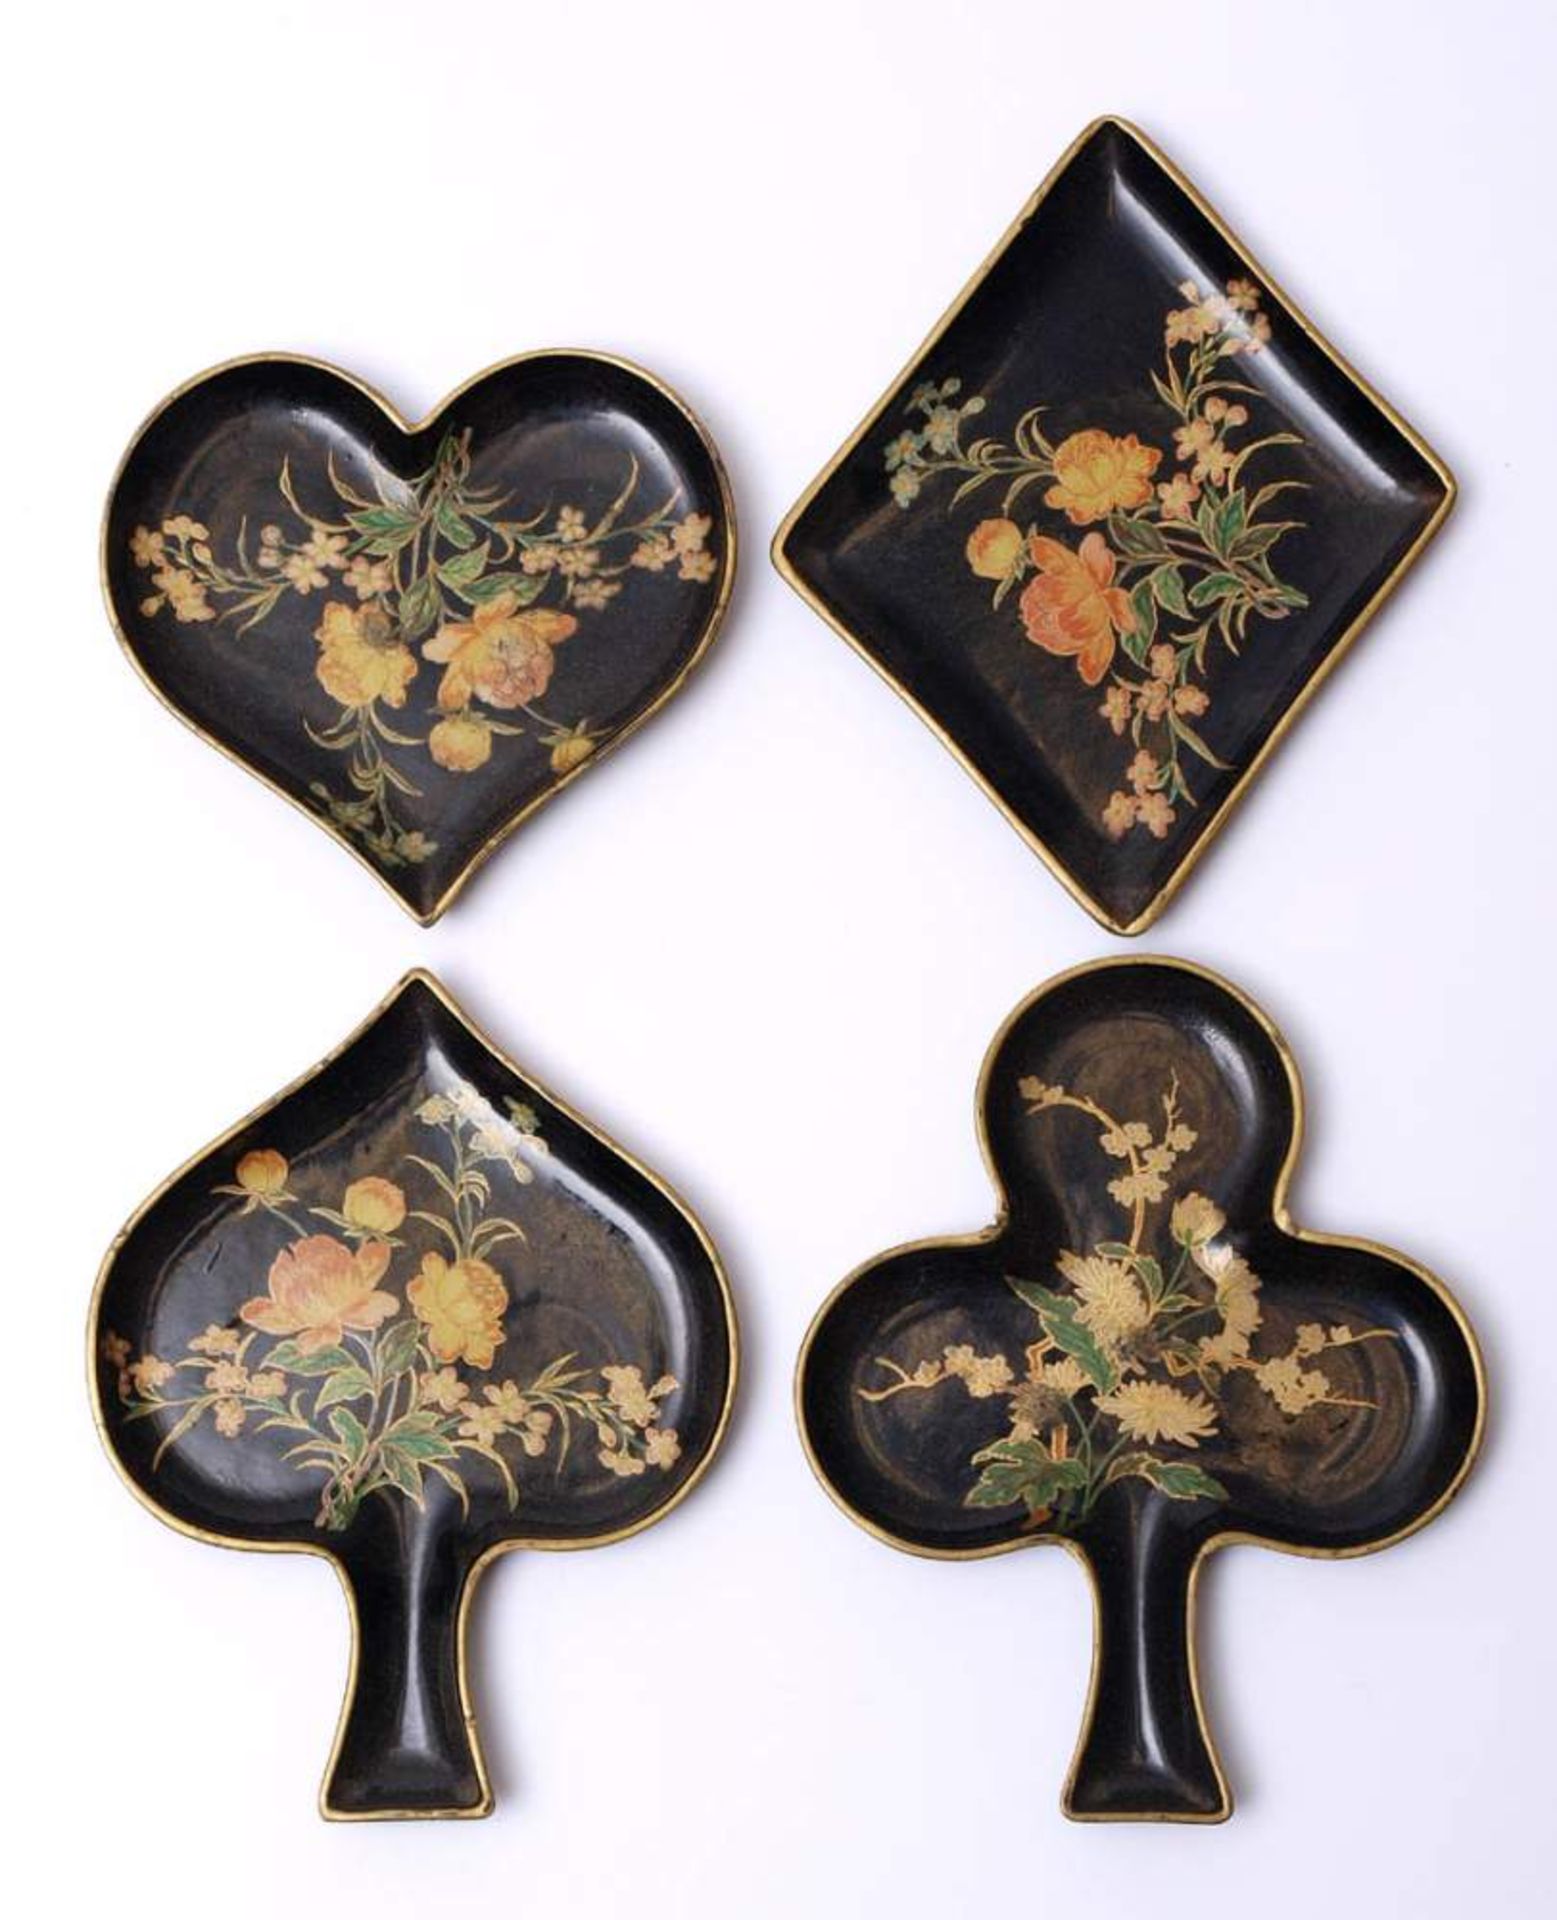 Vier Spielmarkenbehälter, um 1900In Form von Kreuz, Pik, As bzw. Herz. Gelacktes Papier mit